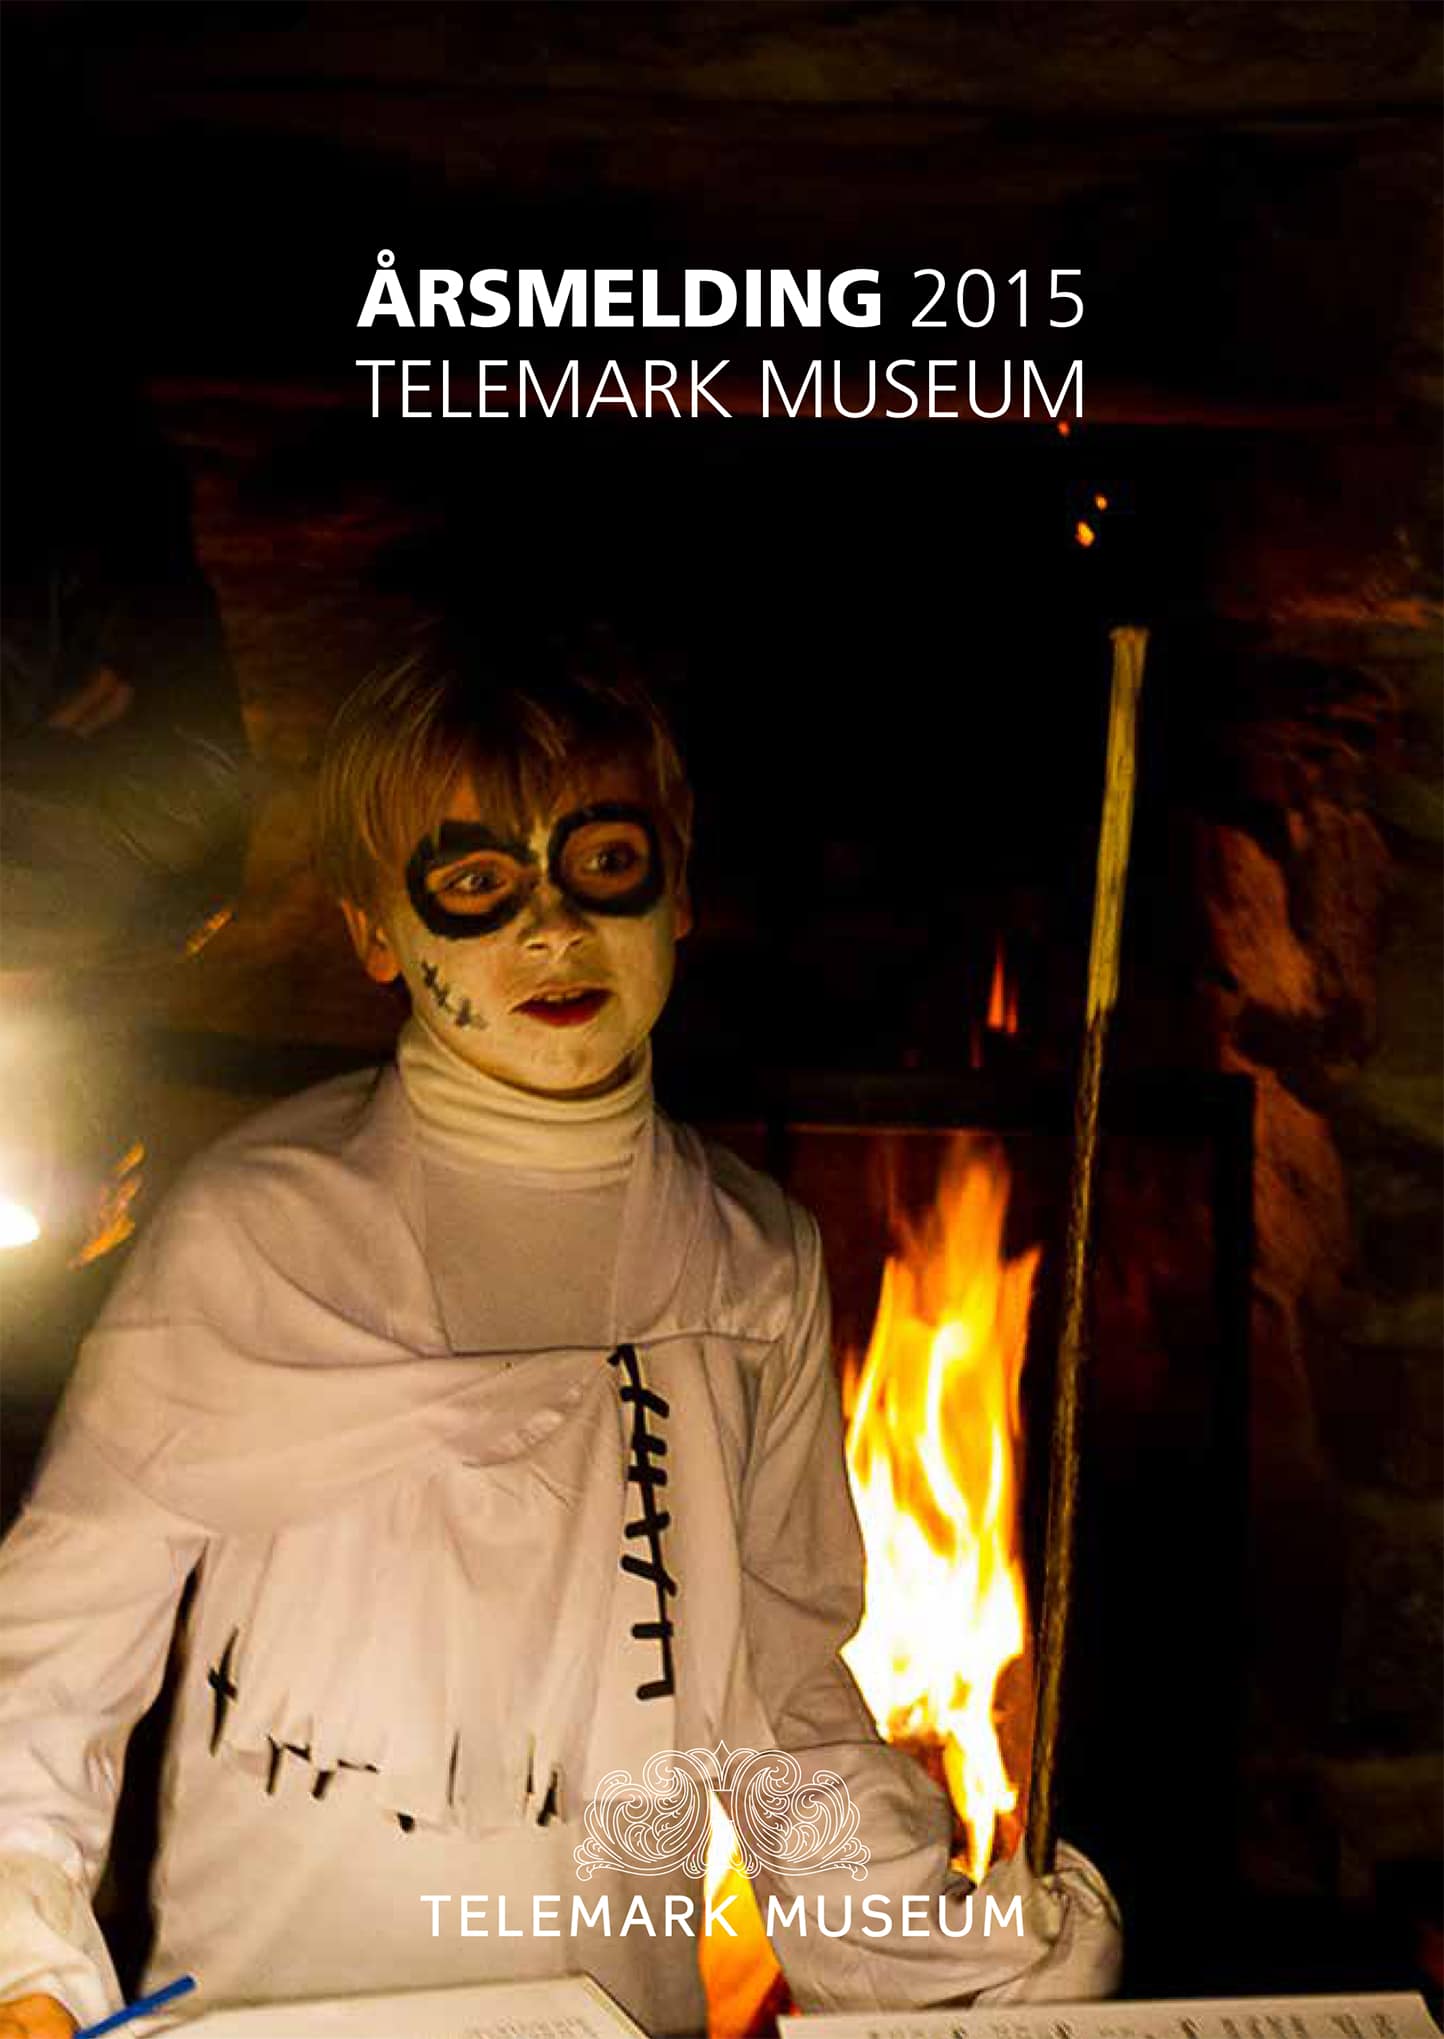 Telemark Museum Årsmelding 2015